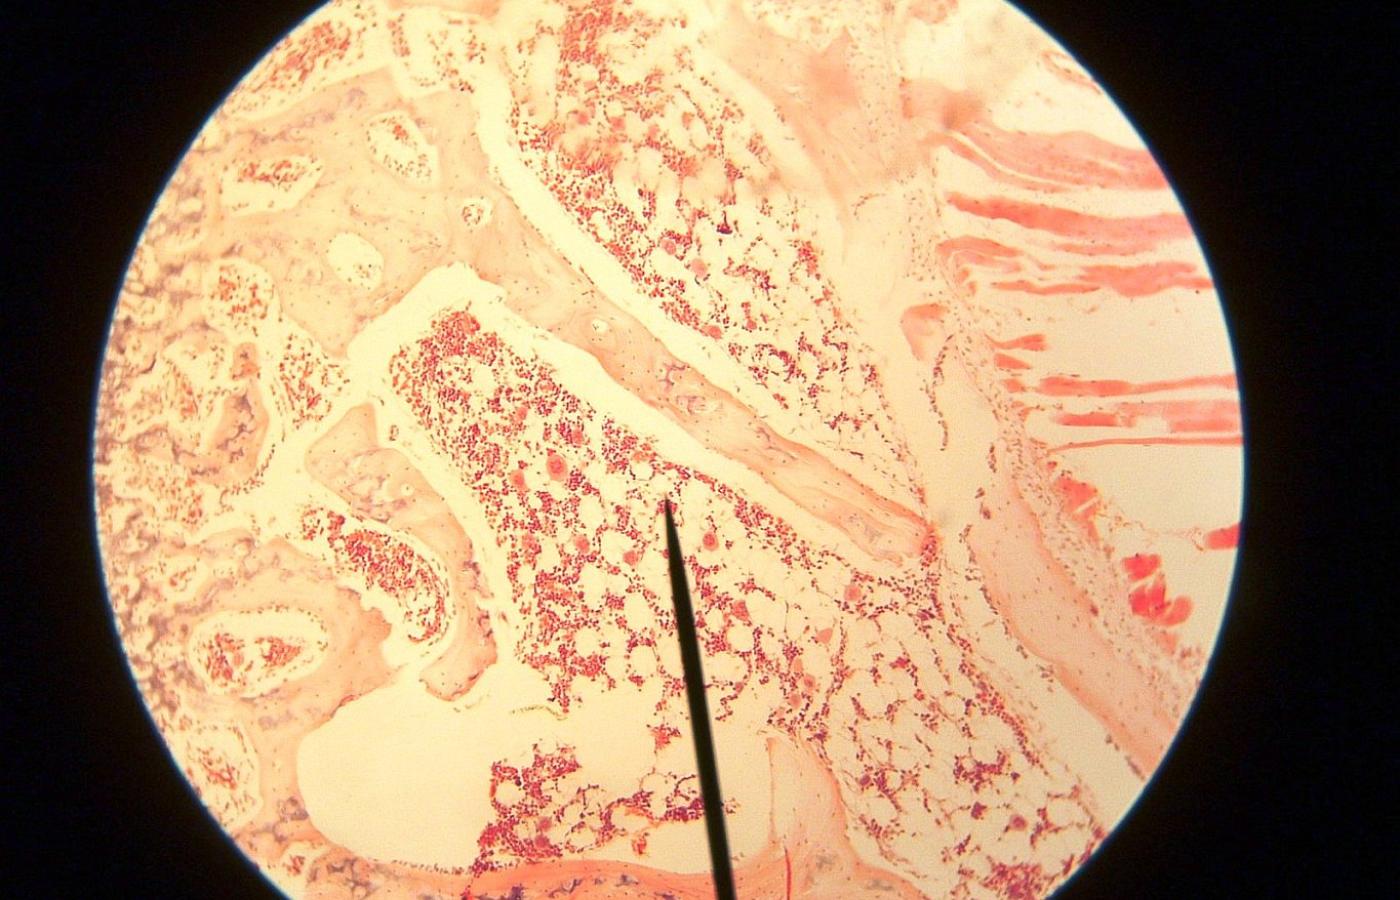 Obraz mikroskopowy szpiku kostnego.